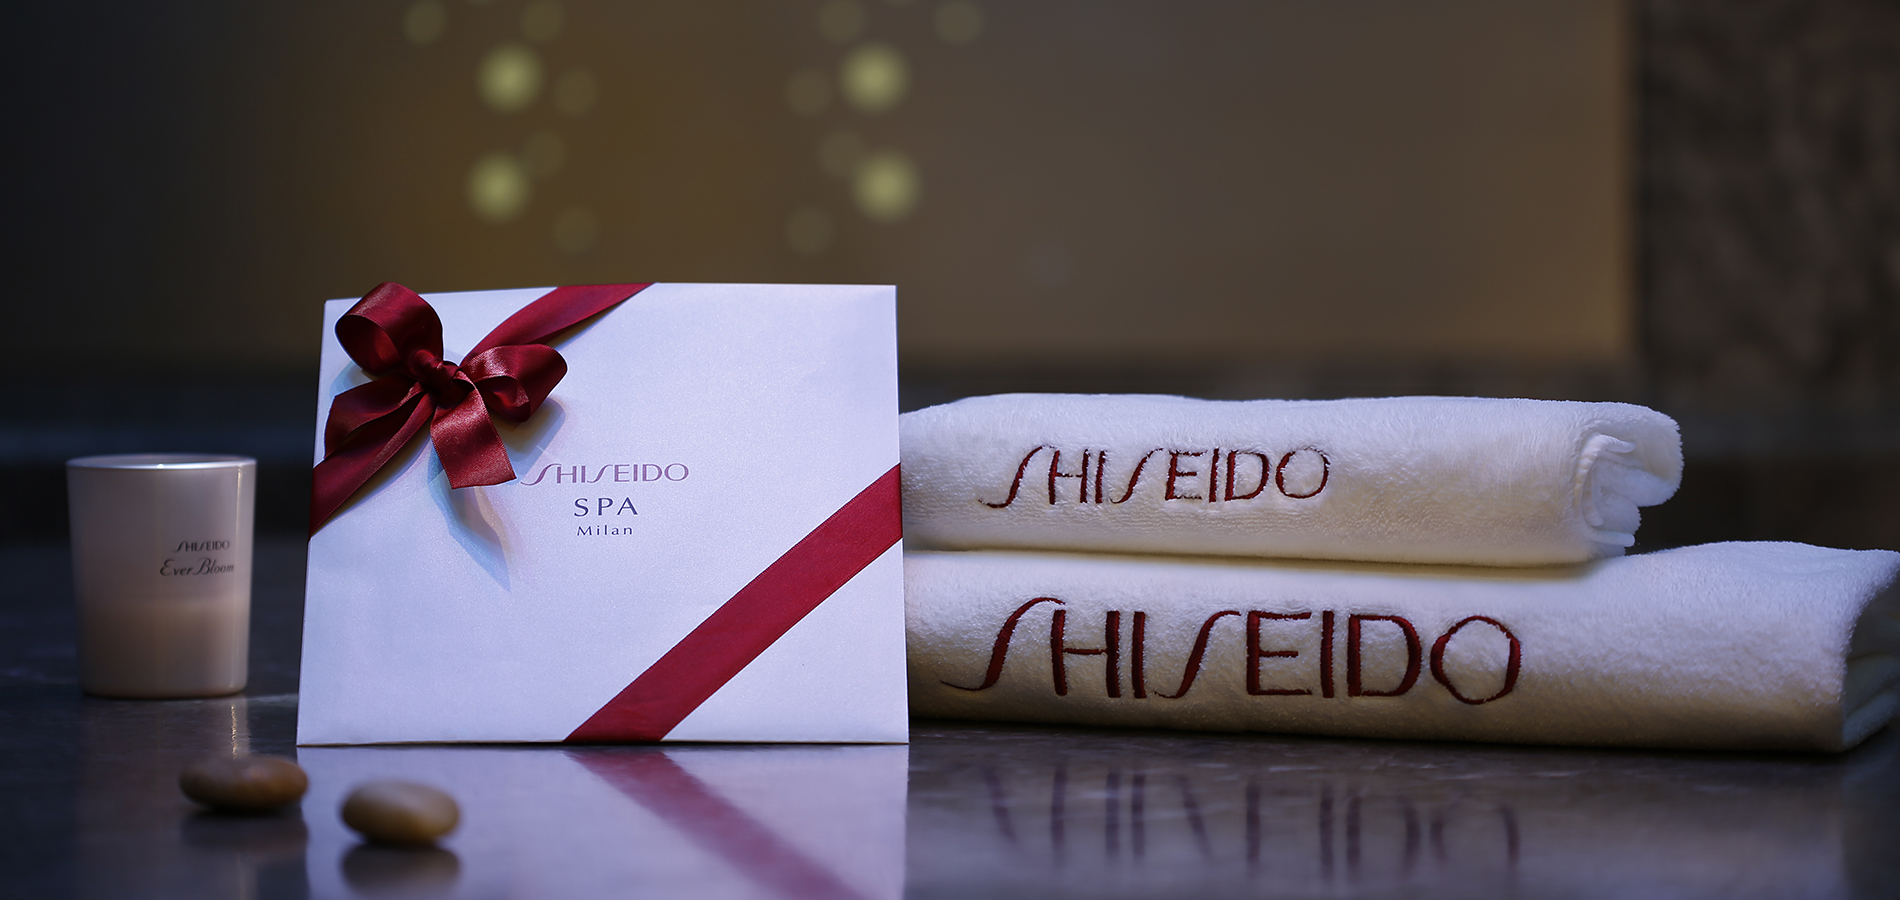 Photos And Videos At Shiseido Spa Milan Award Winning Hotel Spa